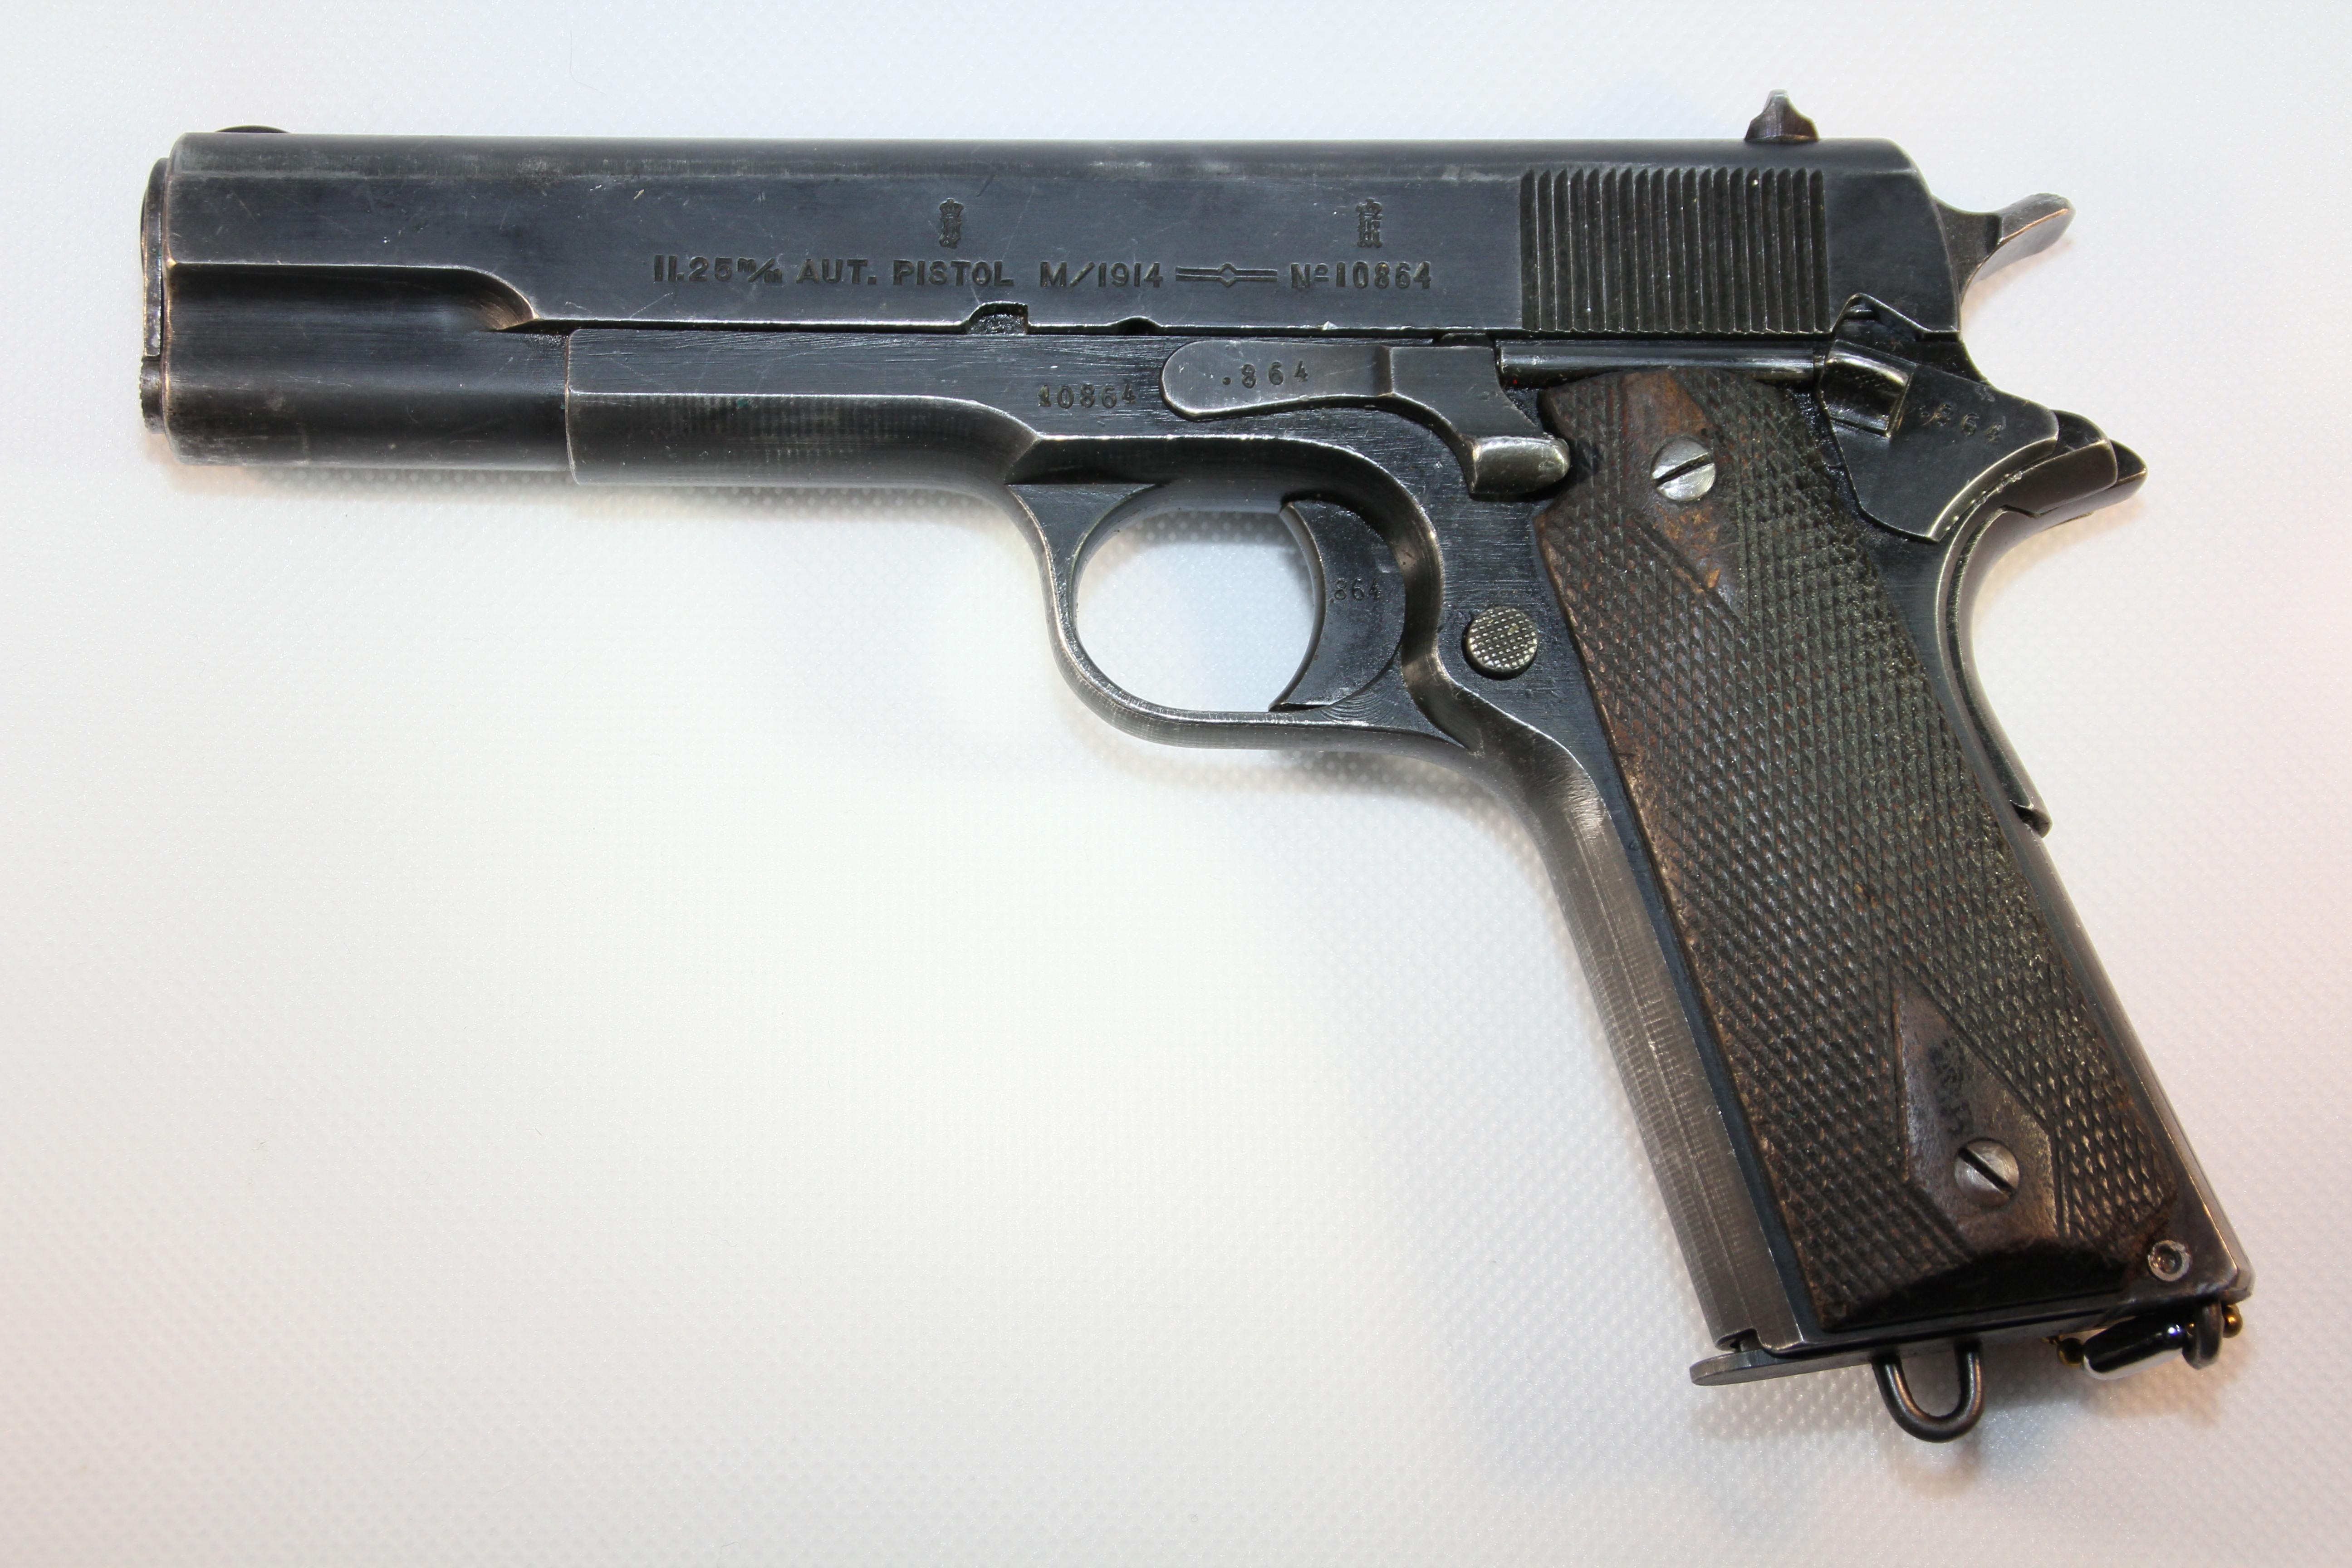 ./guns/pistol/bilder/Pistol-Kongsberg-M1914-1926-1.JPG